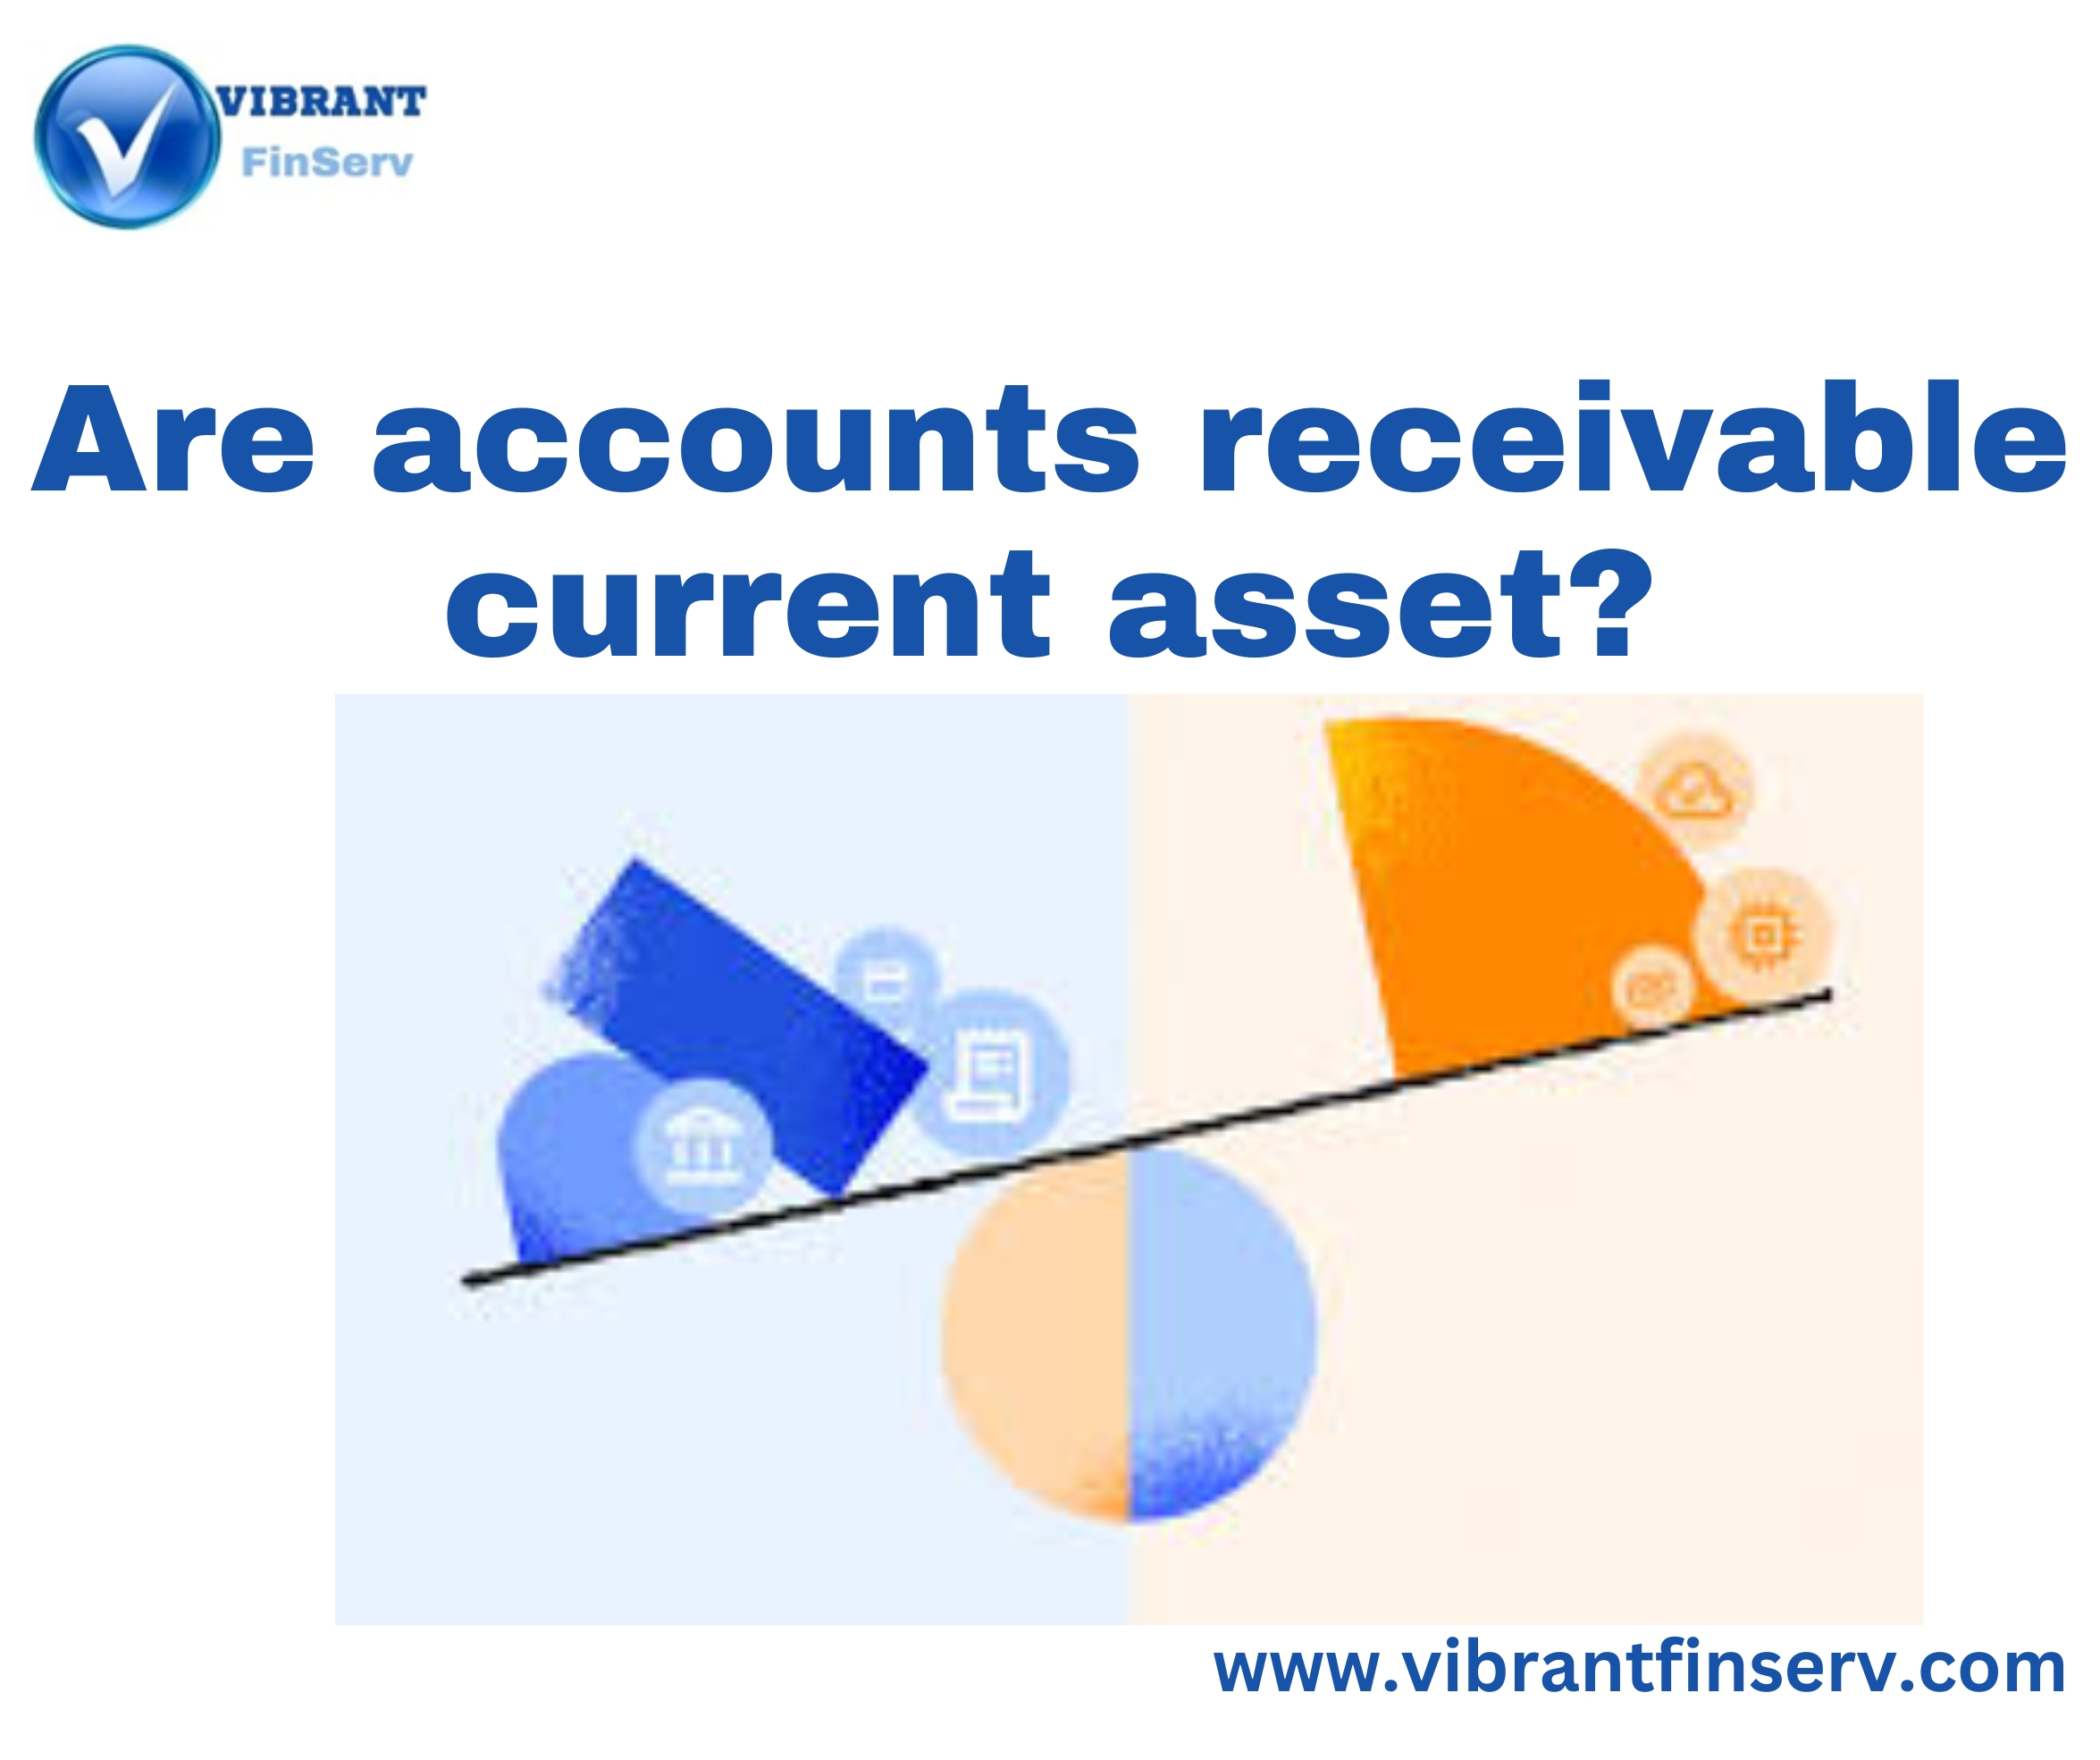 Accounts Receivable Current Asset